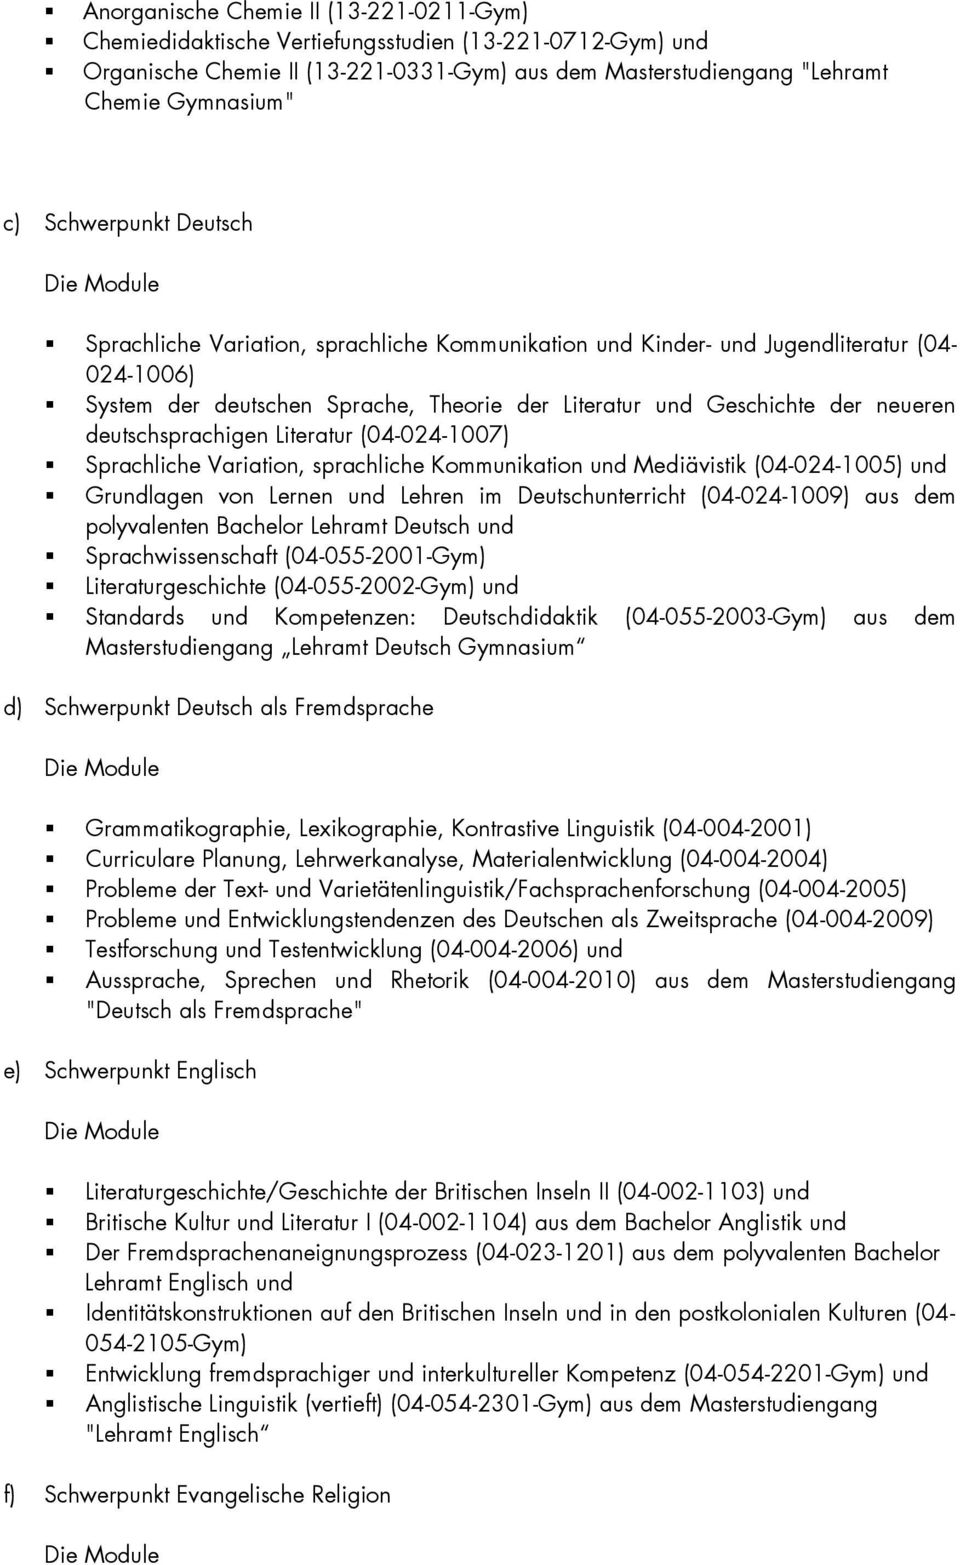 neueren deutschsprachigen Literatur (04-024-1007) Sprachliche Variation, sprachliche Kommunikation und Mediävistik (04-024-1005) und Grundlagen von Lernen und Lehren im Deutschunterricht